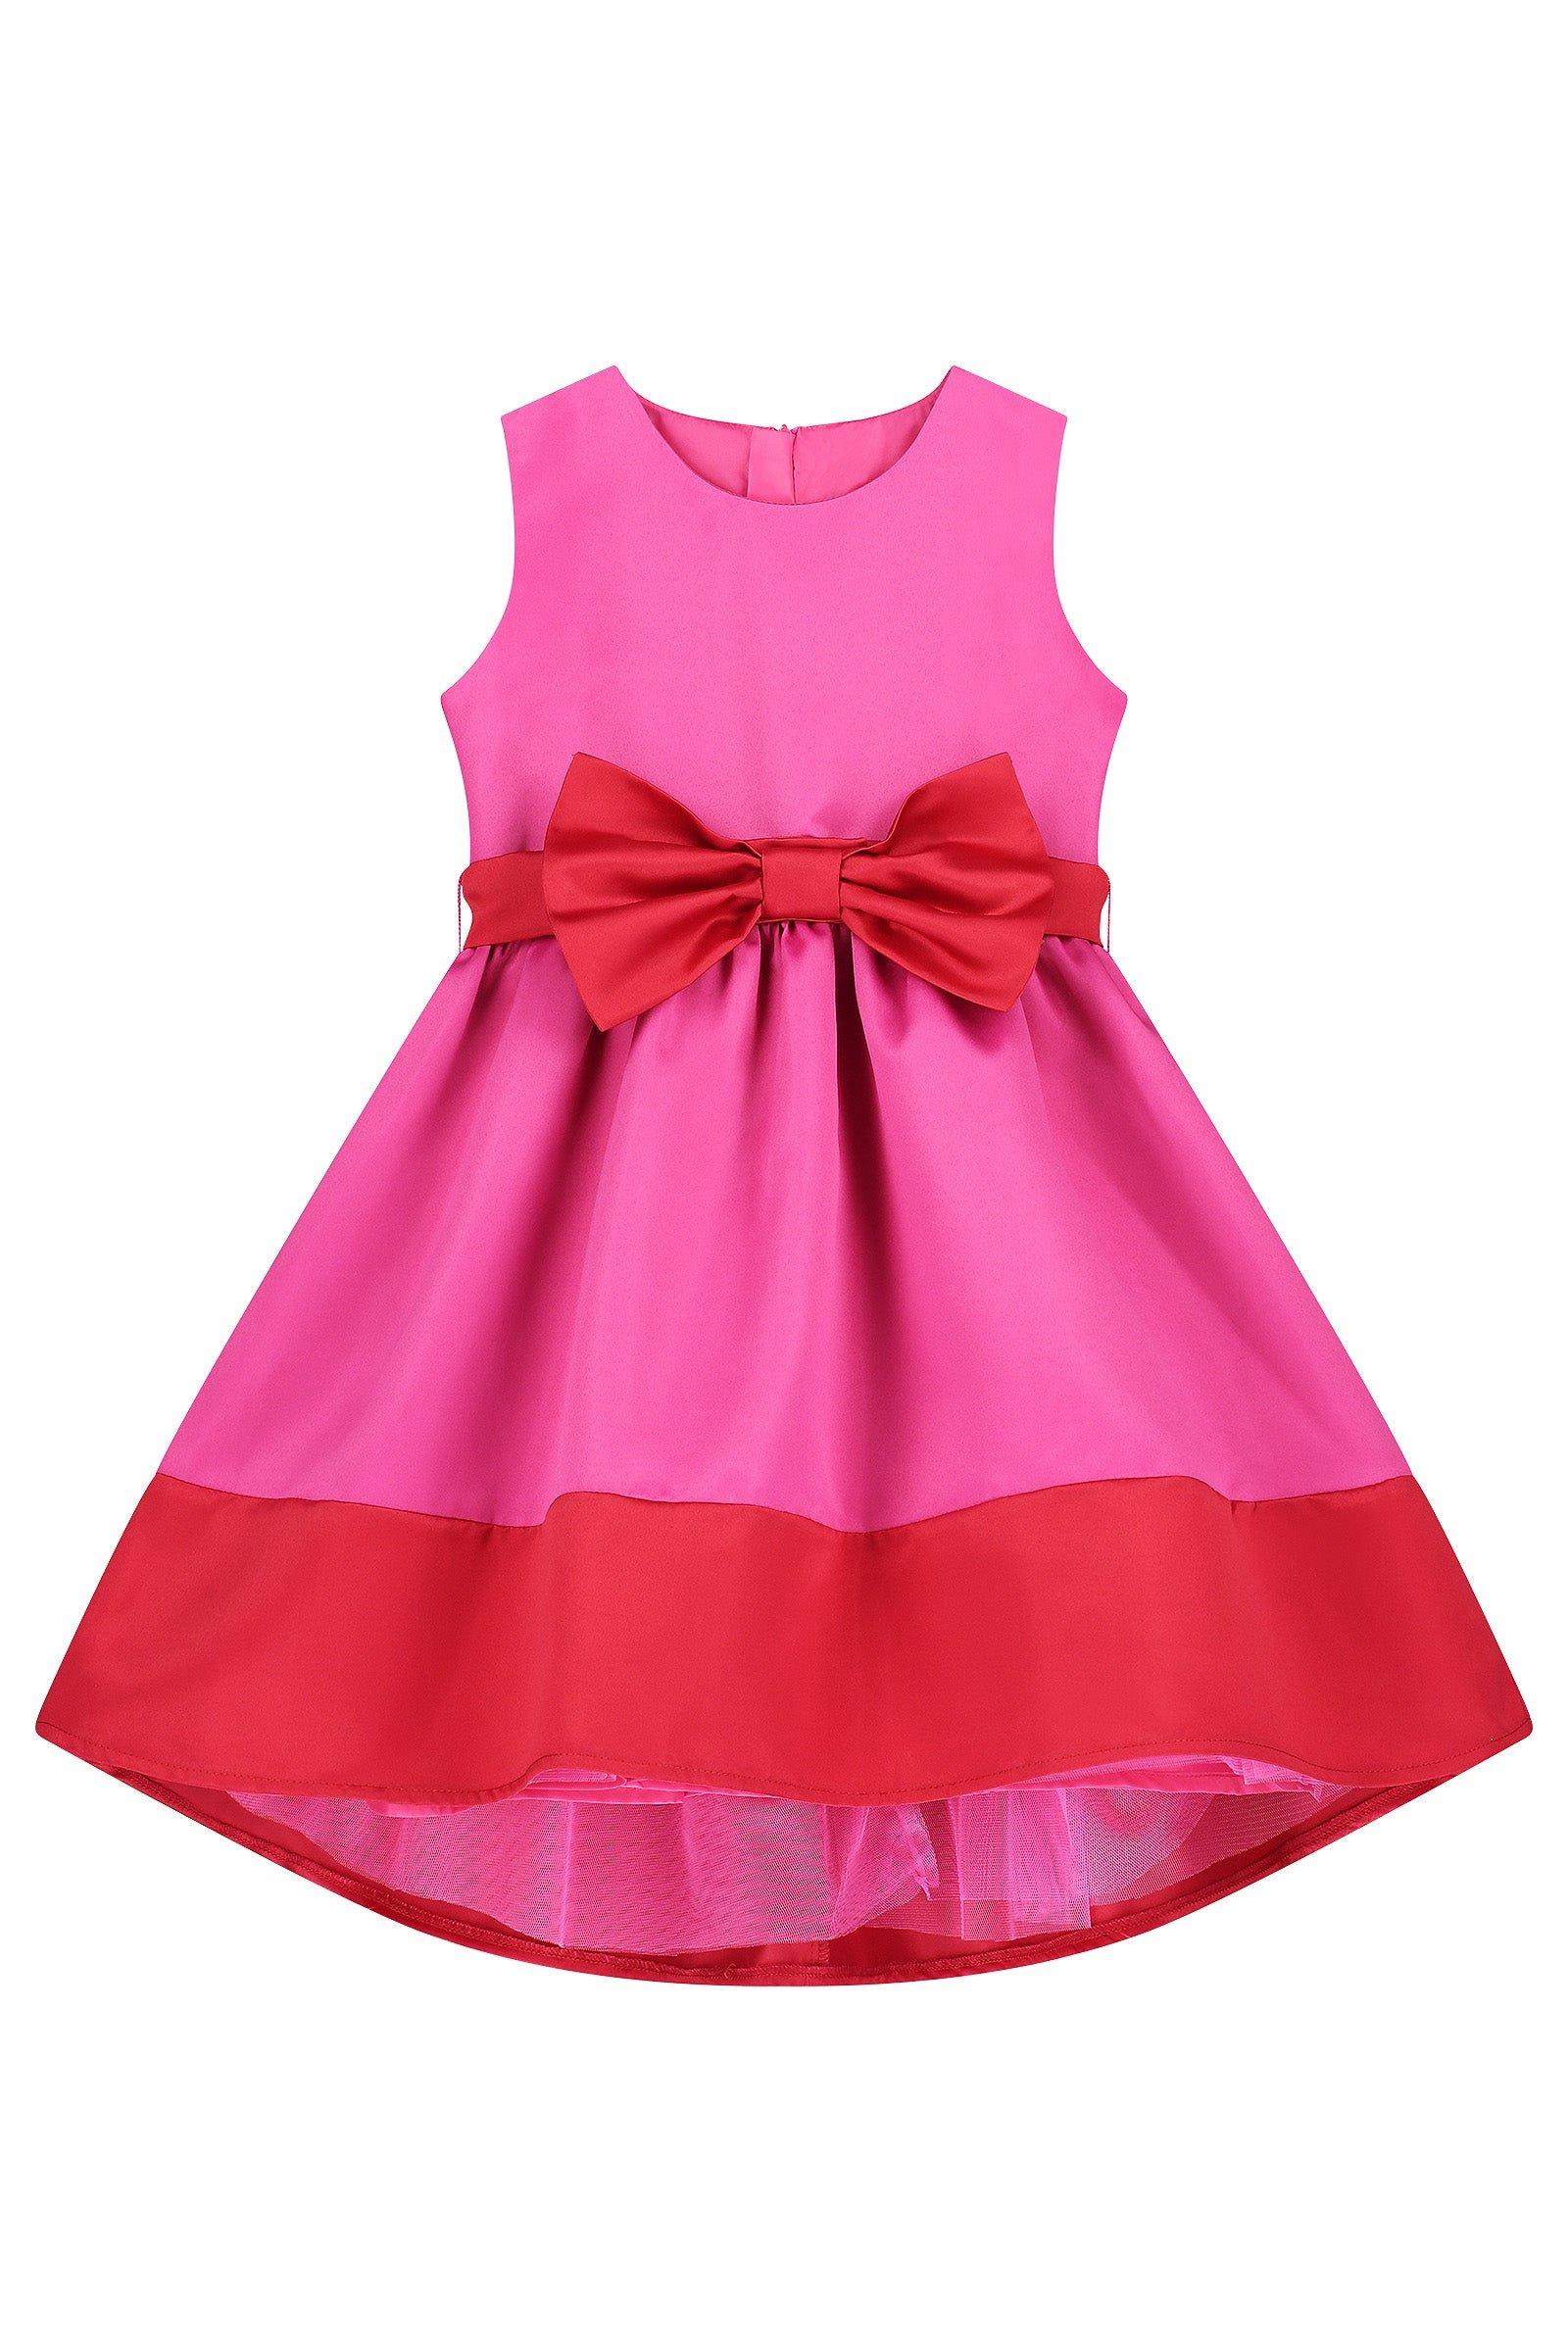 Атласное вечернее платье с бантом Florence HOLLY HASTIE, розовый платье la redoute короткое асимметричное атласное с бантом xs розовый